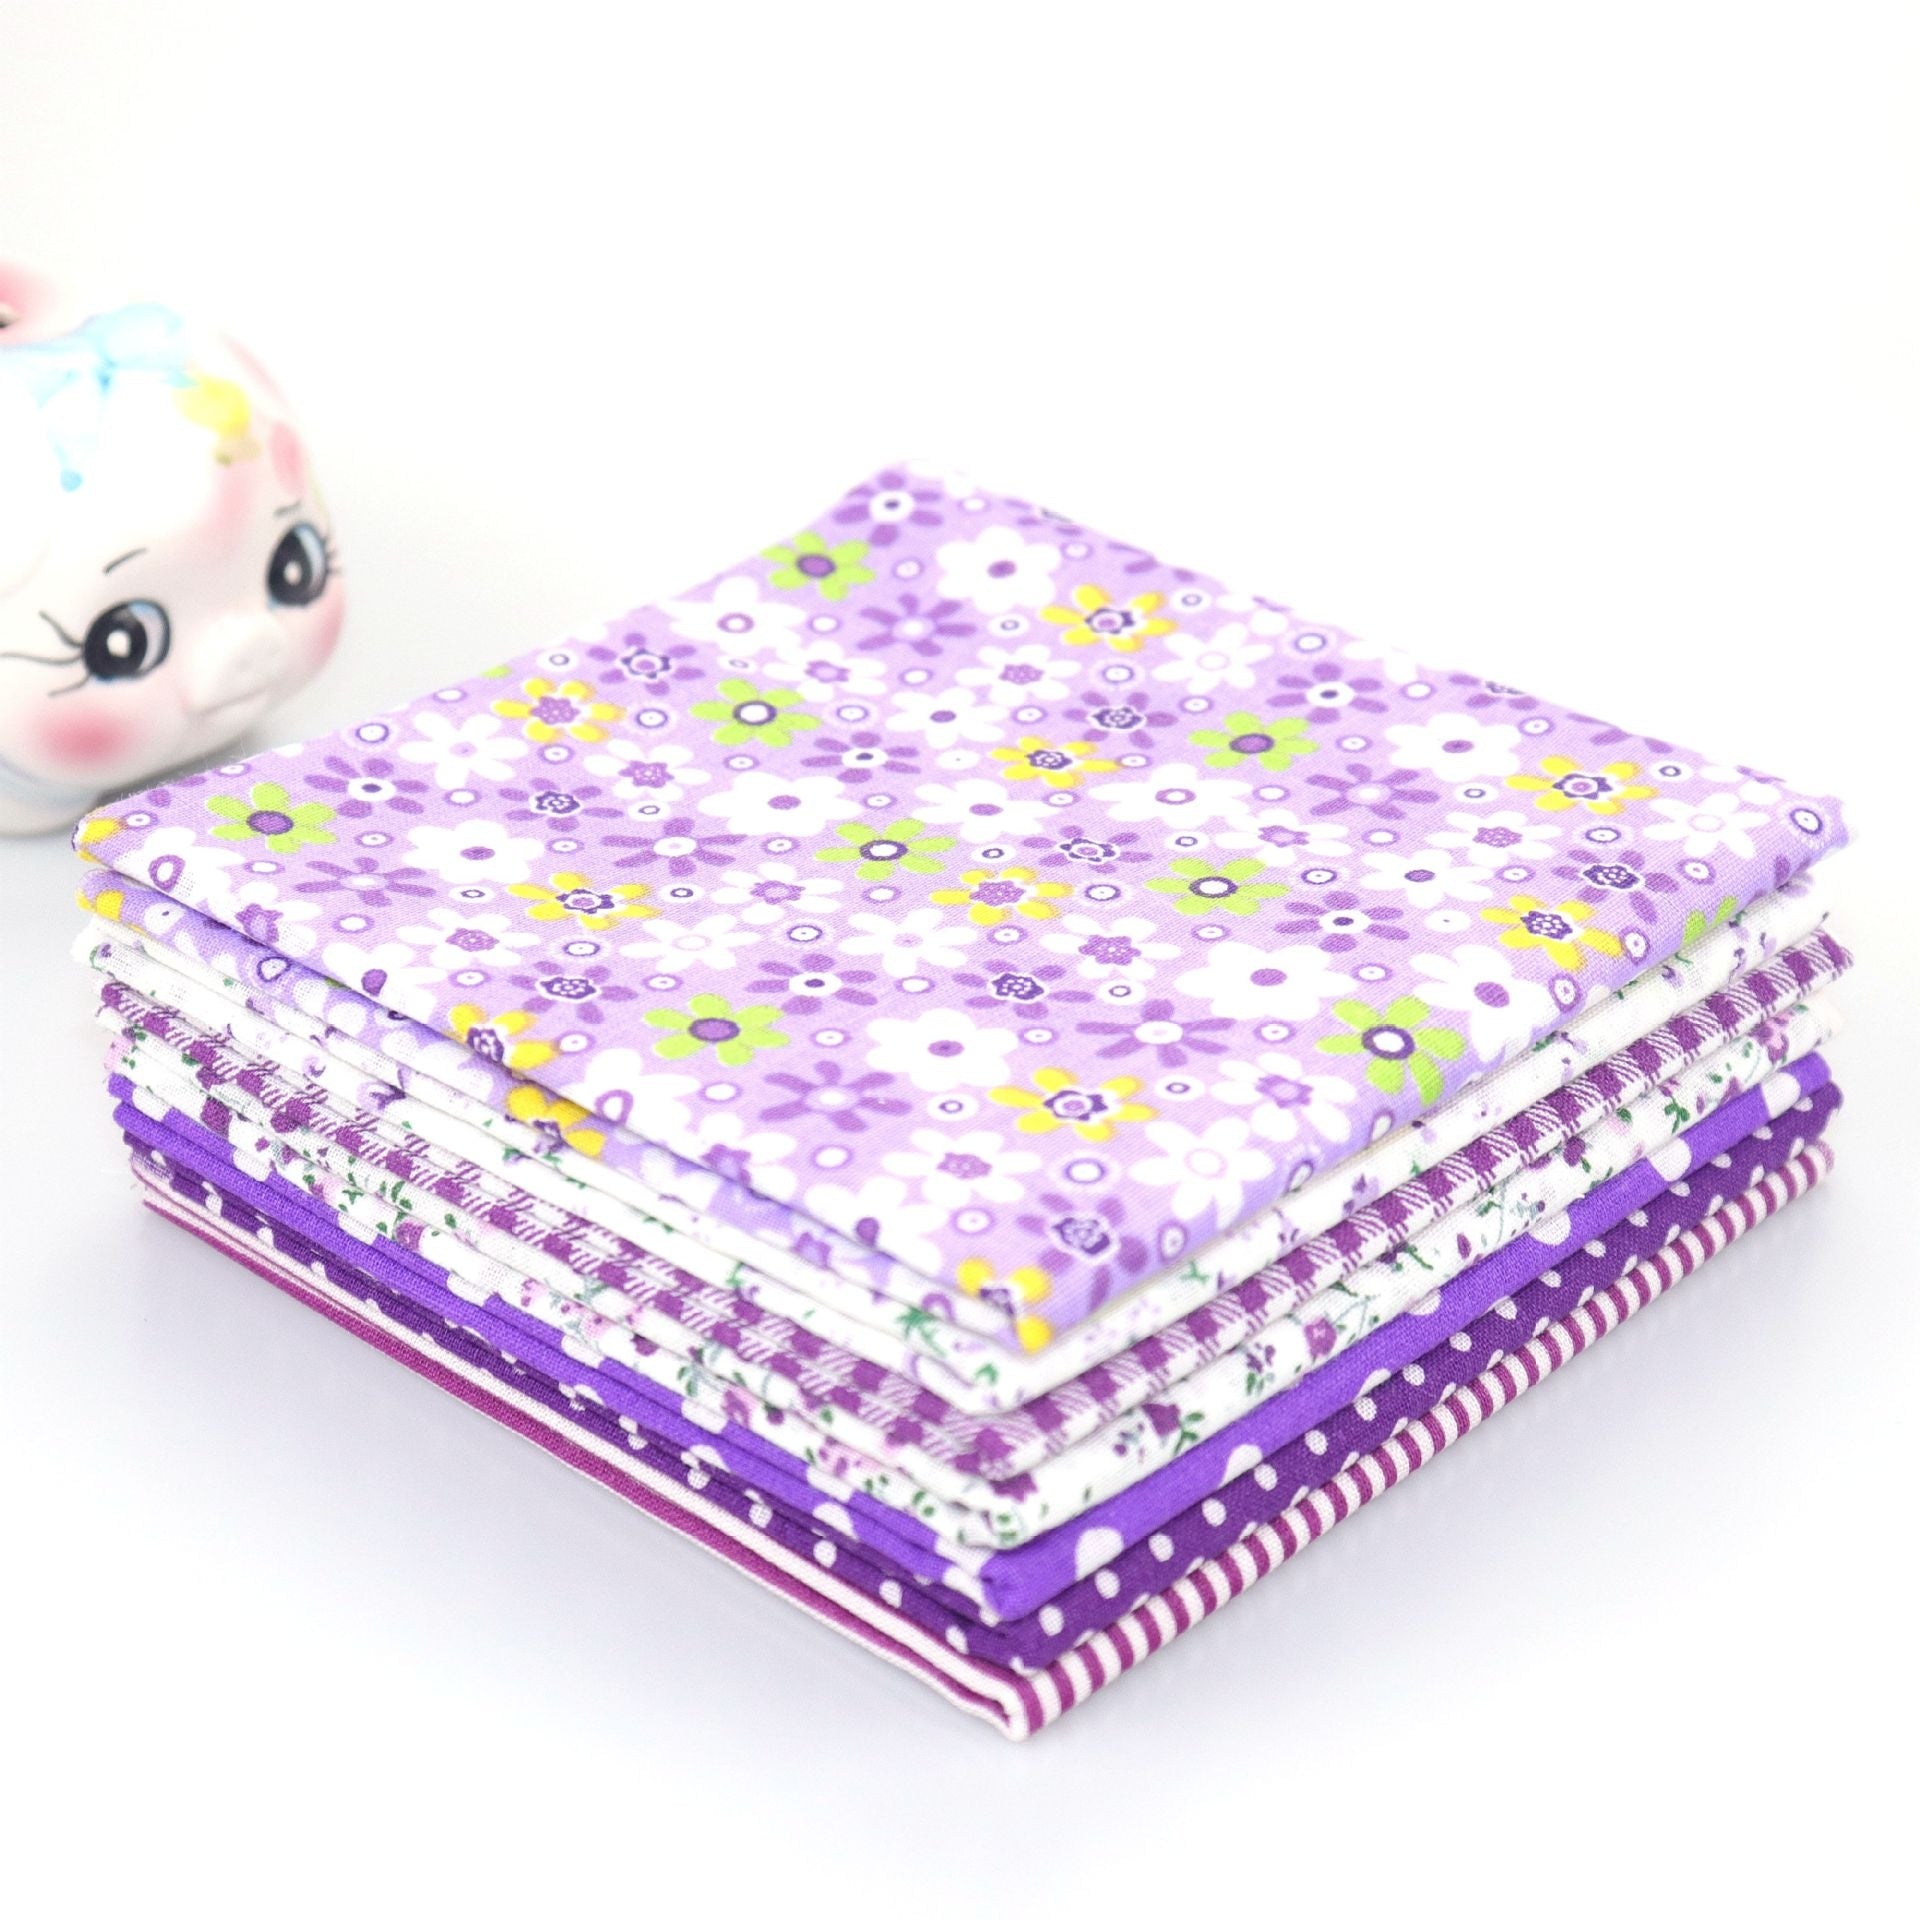 MajorCrafts 7pcs of 50cm x 50cm Mixed Purple Theme Cotton Fabric Patchwork Squares